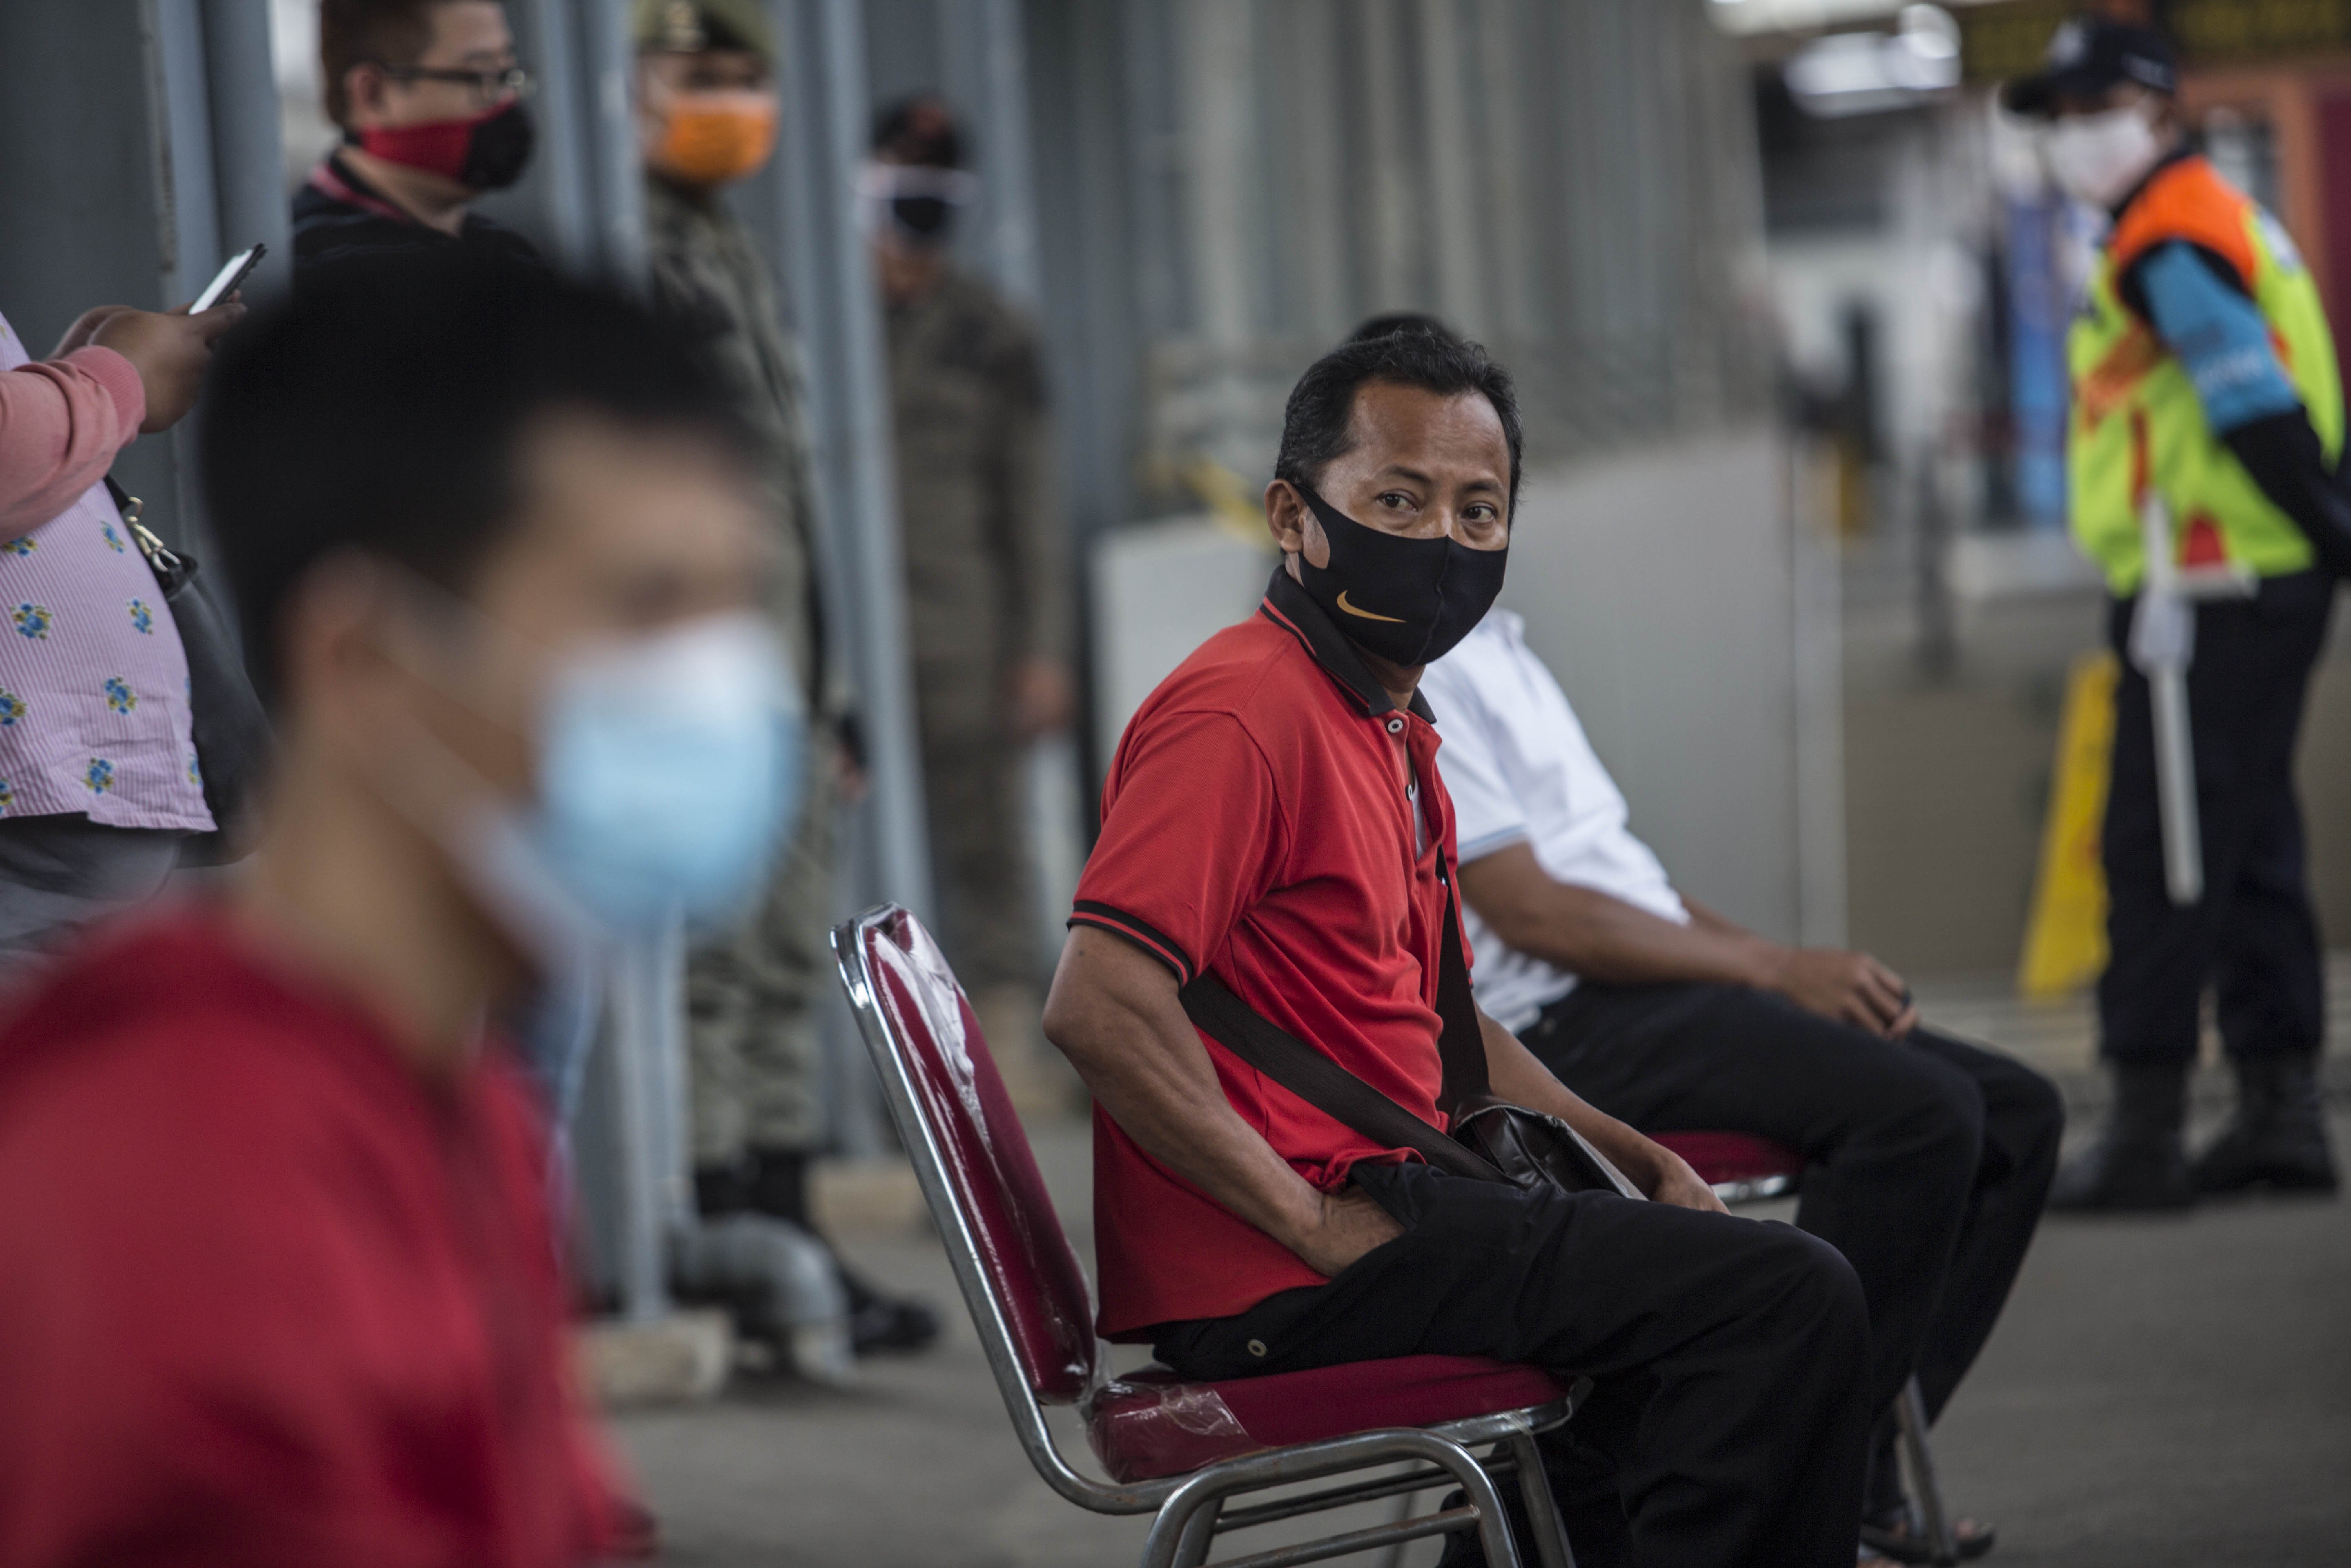 Penumpang KRL Commuter Line menunggu giliran swab test masal Covid -19 di Stasiun Bojong Gede, Bogor, Jawa Barat, Senin (11/5). Tes swab tersebut dilakukan kepada 200 calon penumpang KRL secara acak sebagai salah satu langkah untuk mendeteksi dan mencegah penyebaran virus COVID-19 di transportasi umum.